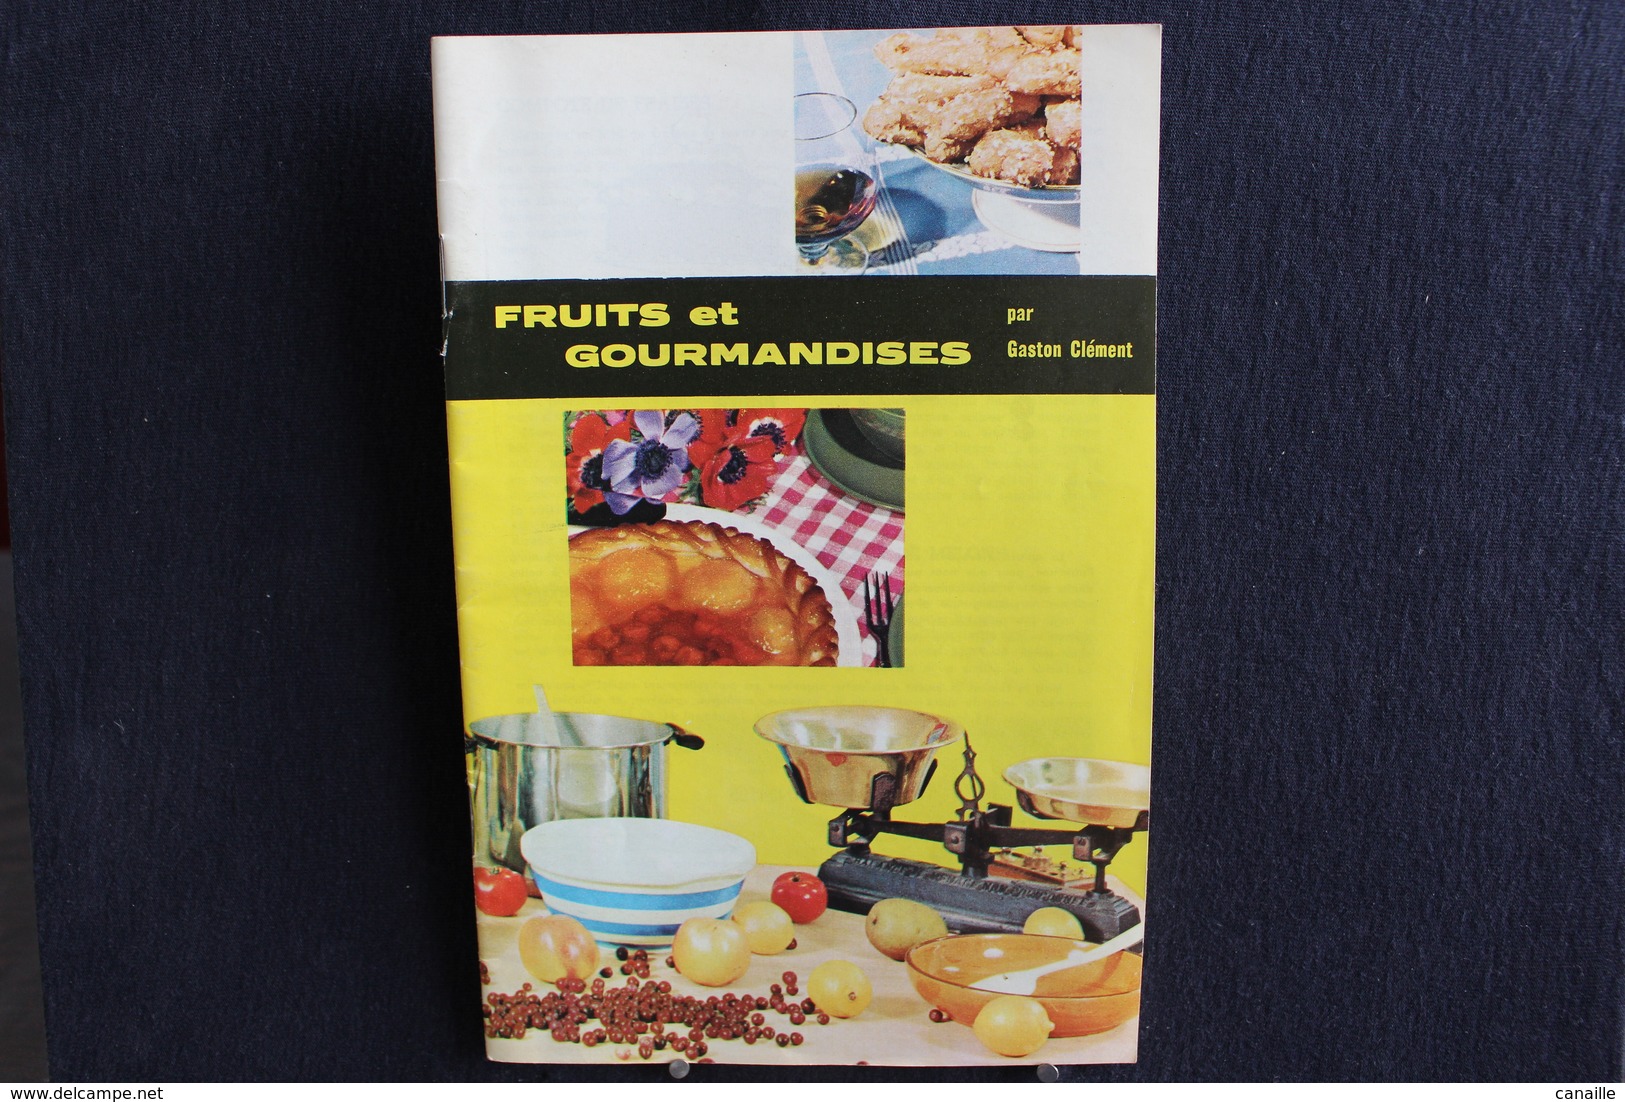 Publicités ( 5 )  - Livret De Cuisine - Par Gaston Clément - Fruits Et Gourmandises  -  Forma 13x20 Cm 15 Page - Küche & Wein